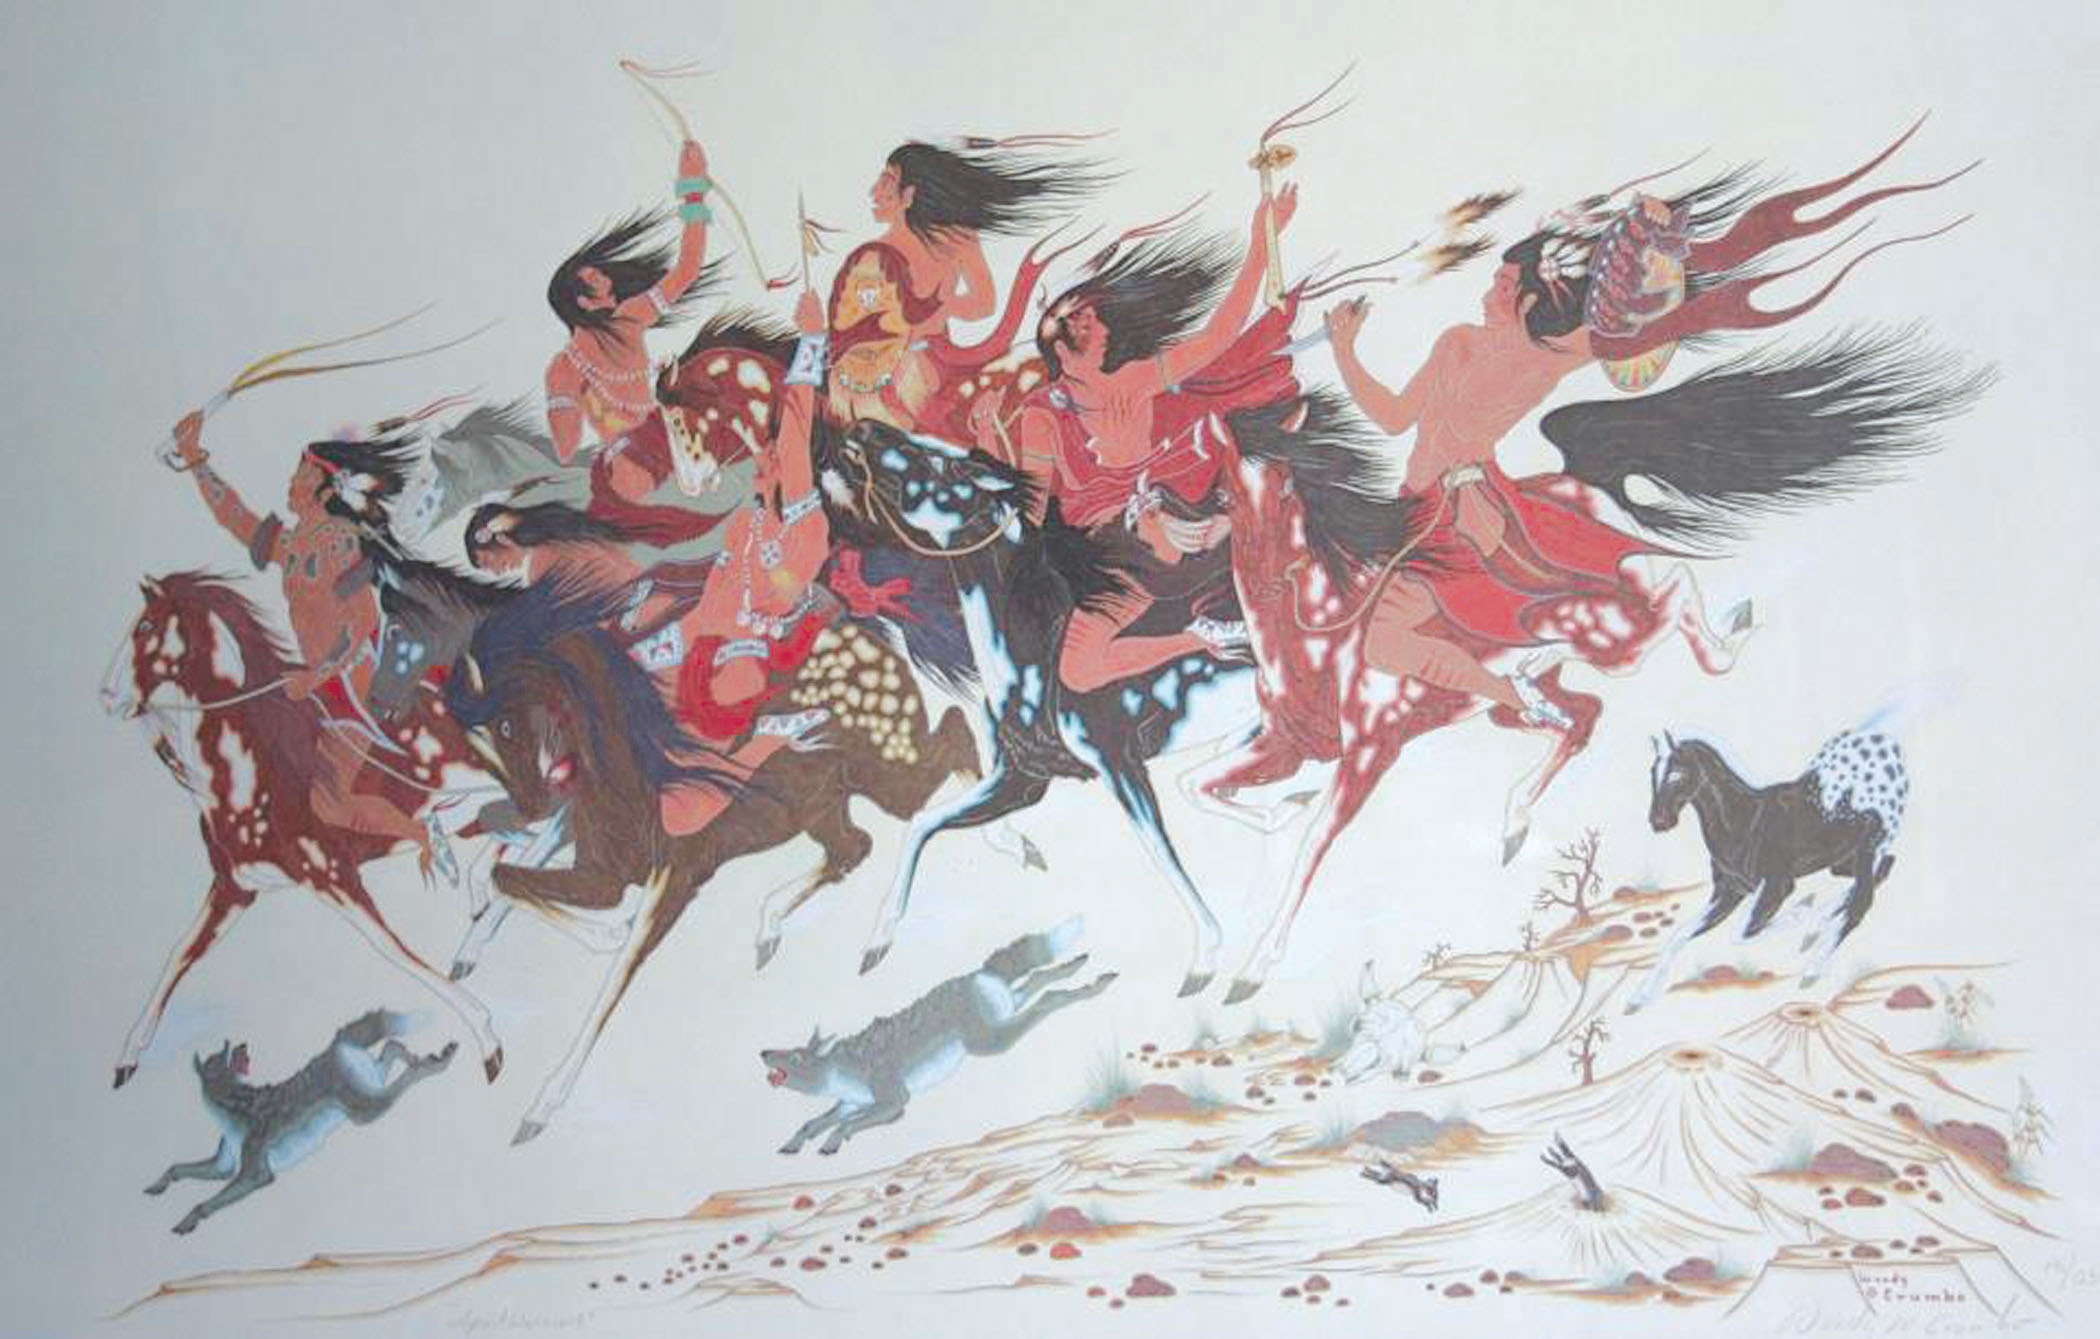 Woody Crumbo art titled Spirit Warriors